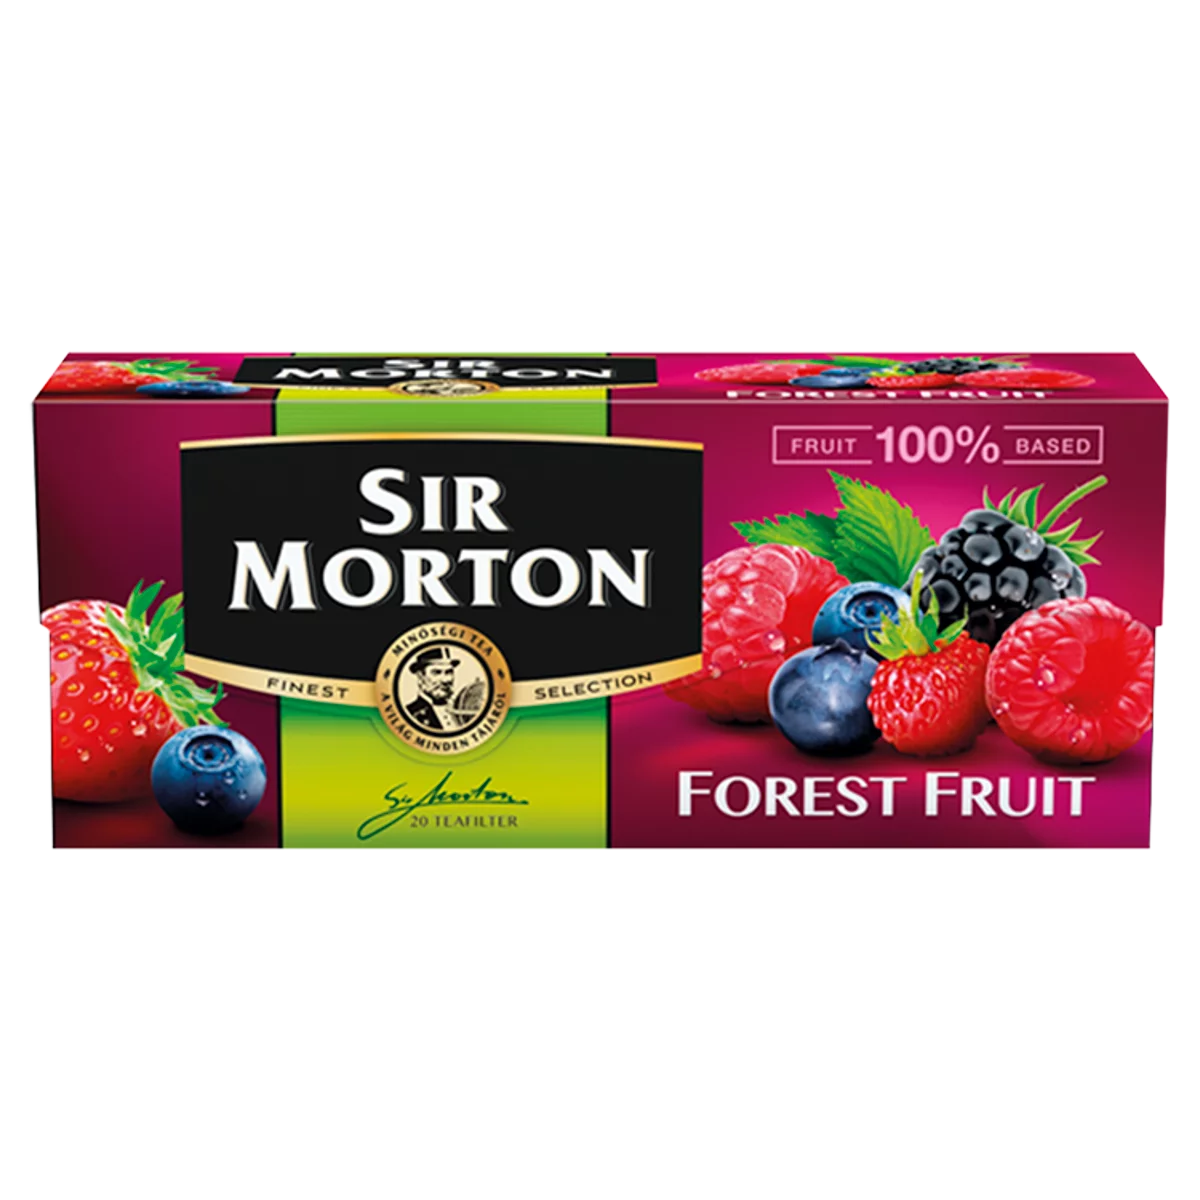 Sir Morton erdeigyümölcsízű gyümölcstea keverék 20 filter 35 g